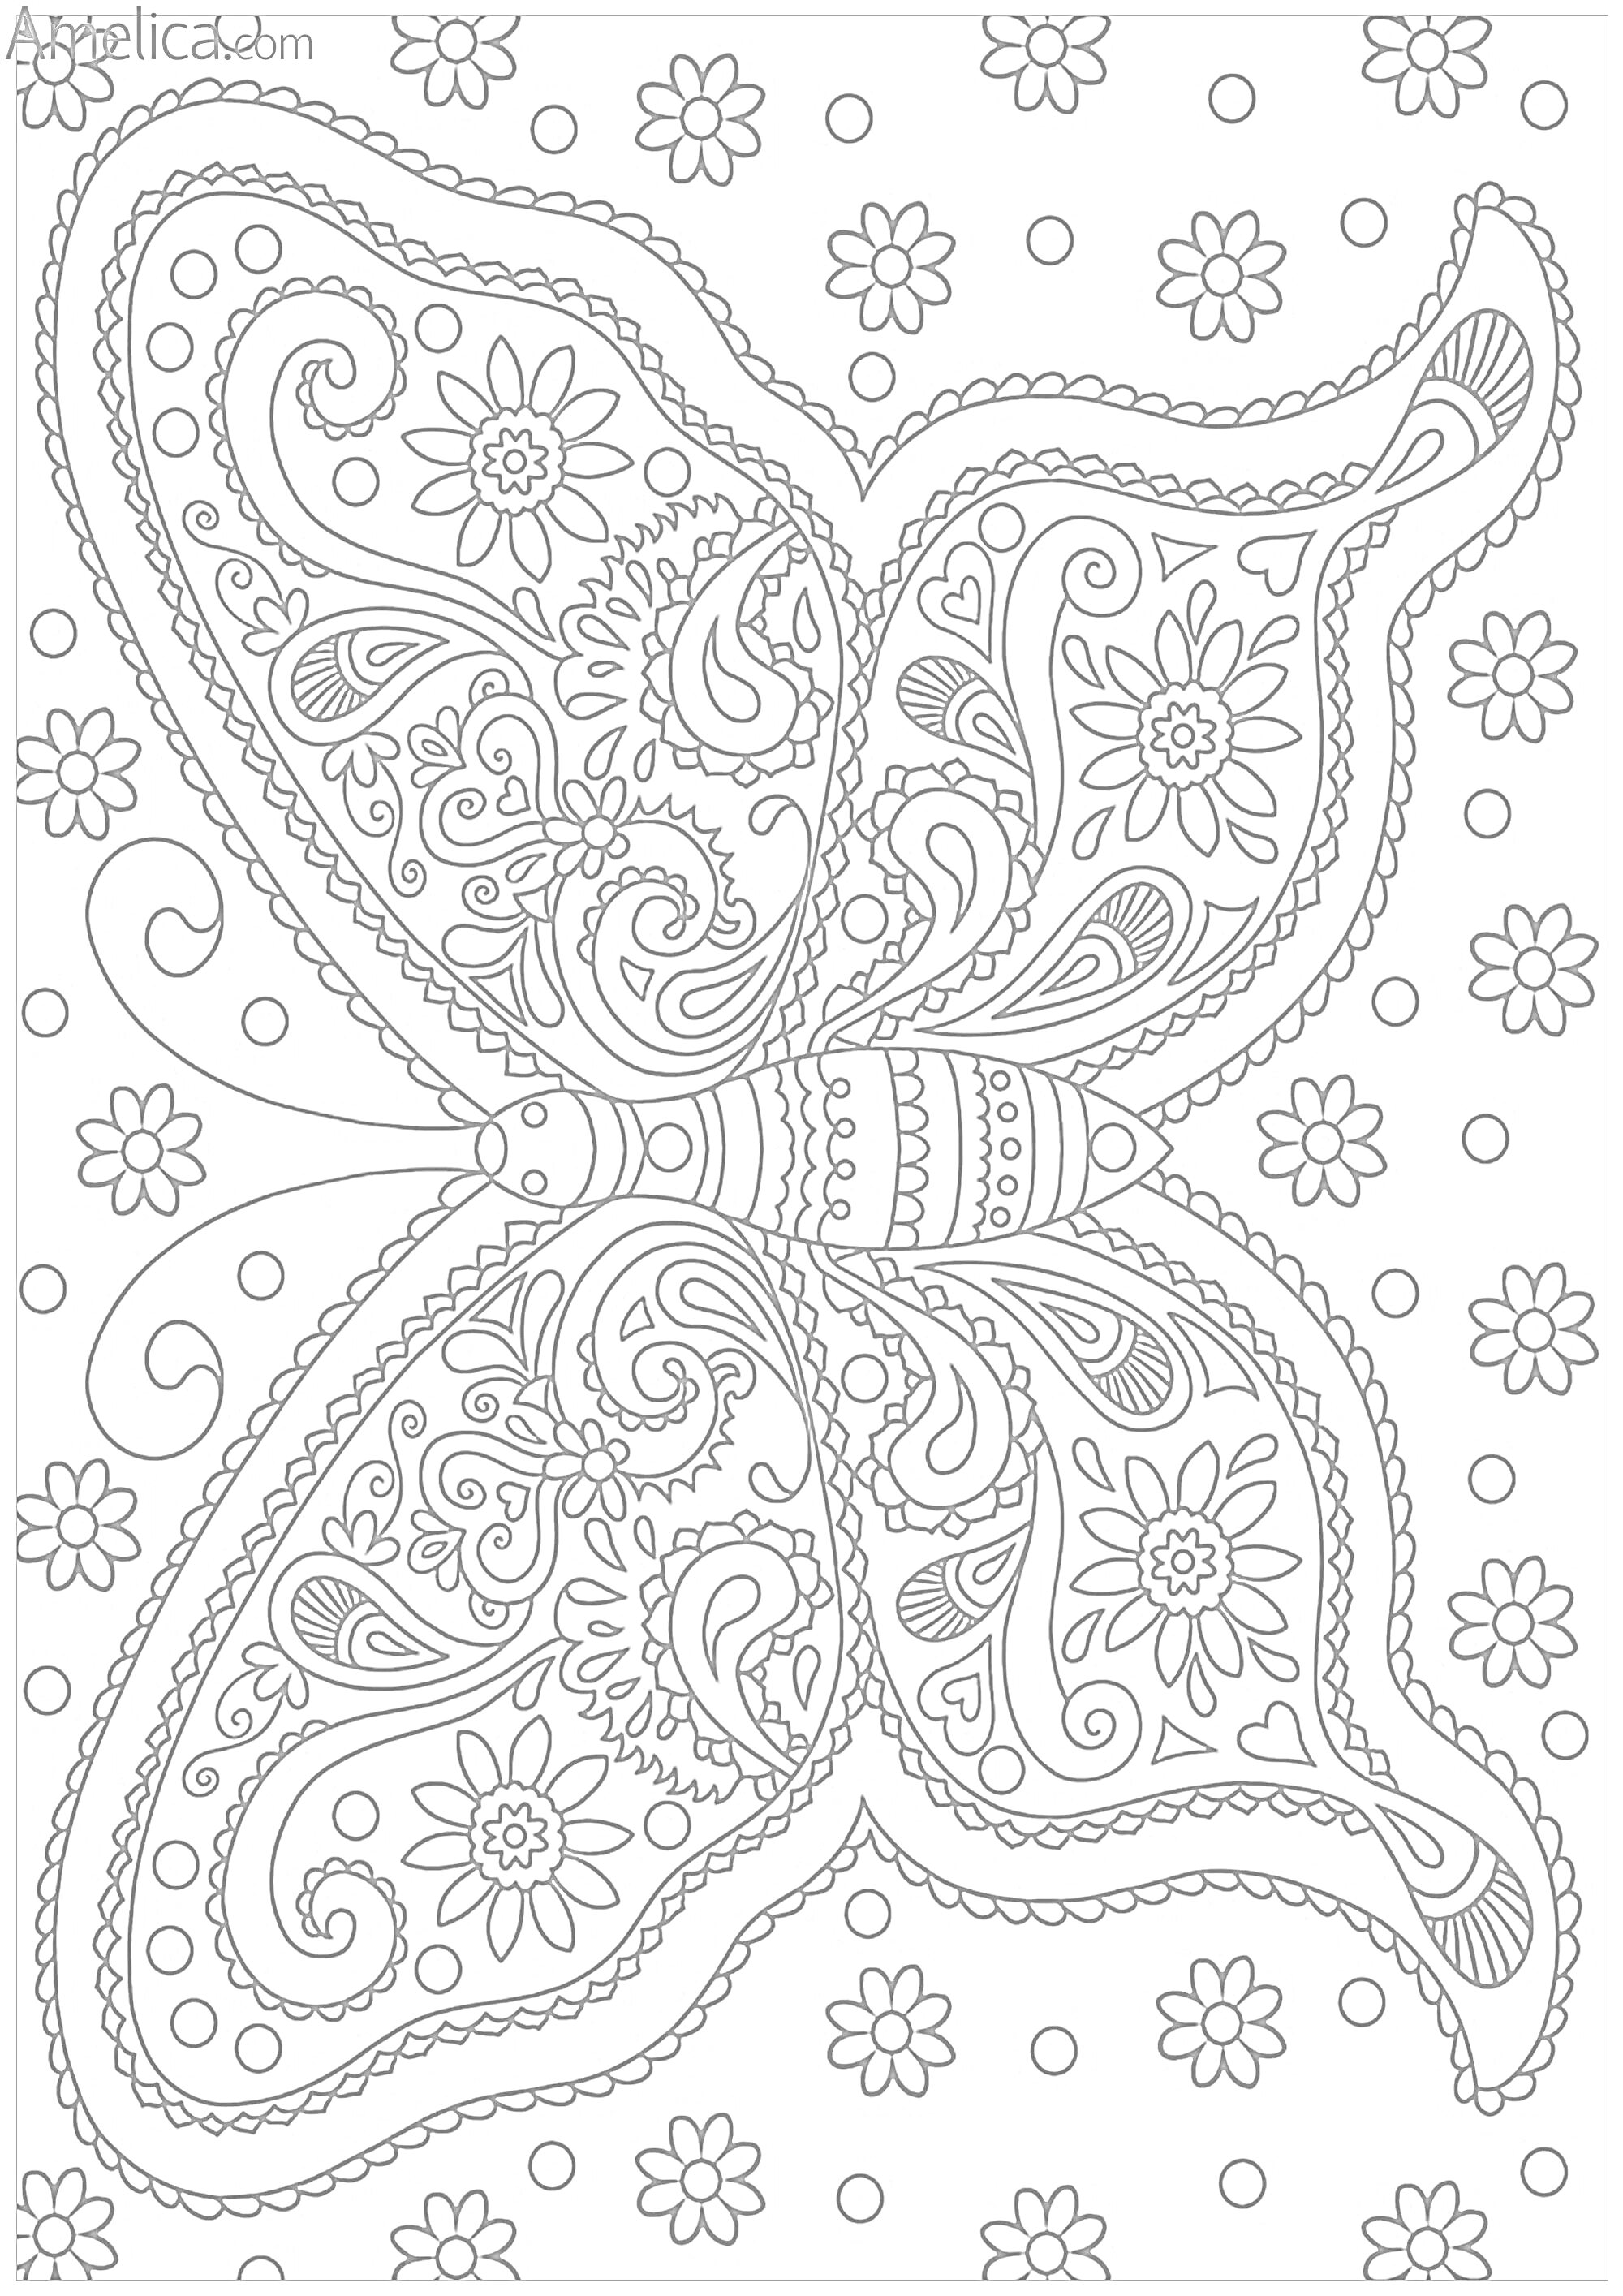 Раскраска Бабочка с узорами, цветами и спиральными элементами на фоне цветочного узора